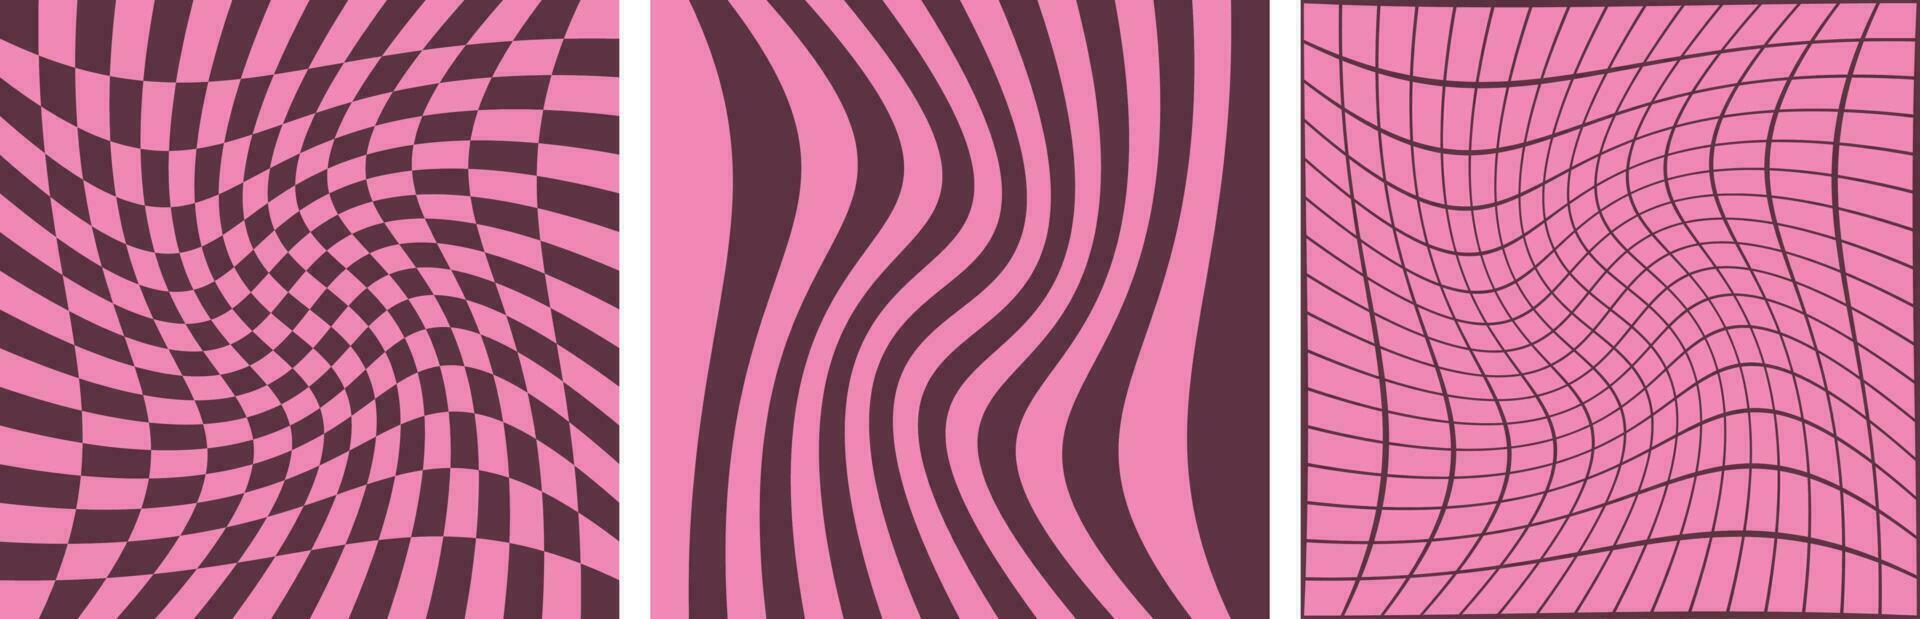 maravilloso antecedentes colocar. Clásico estilo concepto. abstracción. en rosado tonos increíble modelo y textura en de moda dibujos animados retro años 60, 70s estilo.vector ilustración. vector